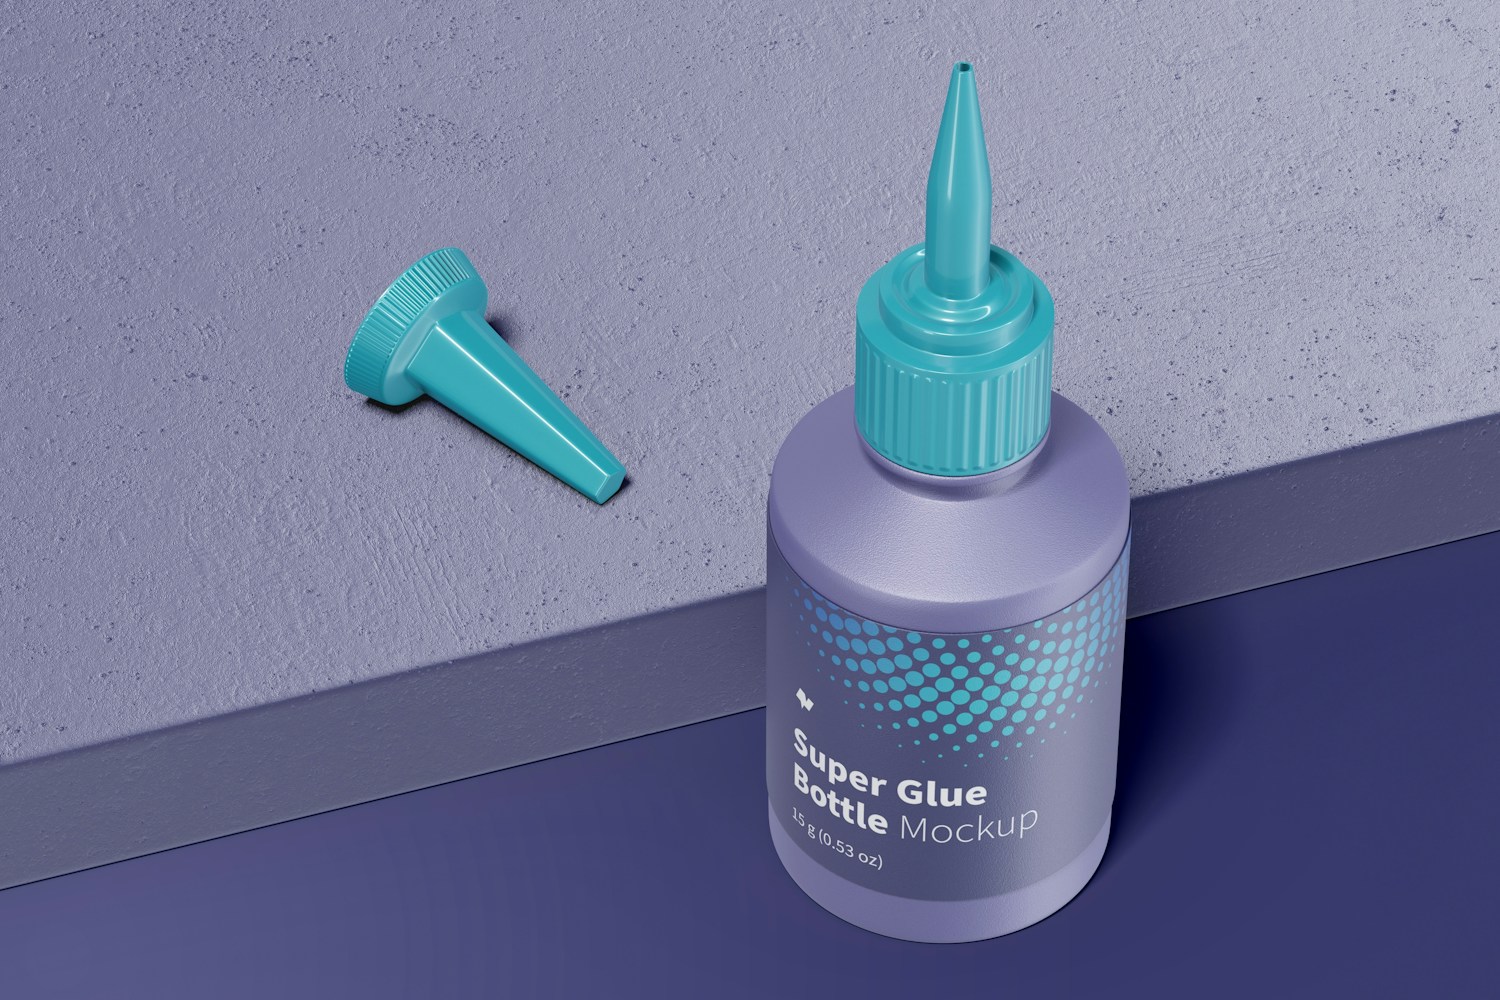 Super Glue Bottle Mockup, Perspective